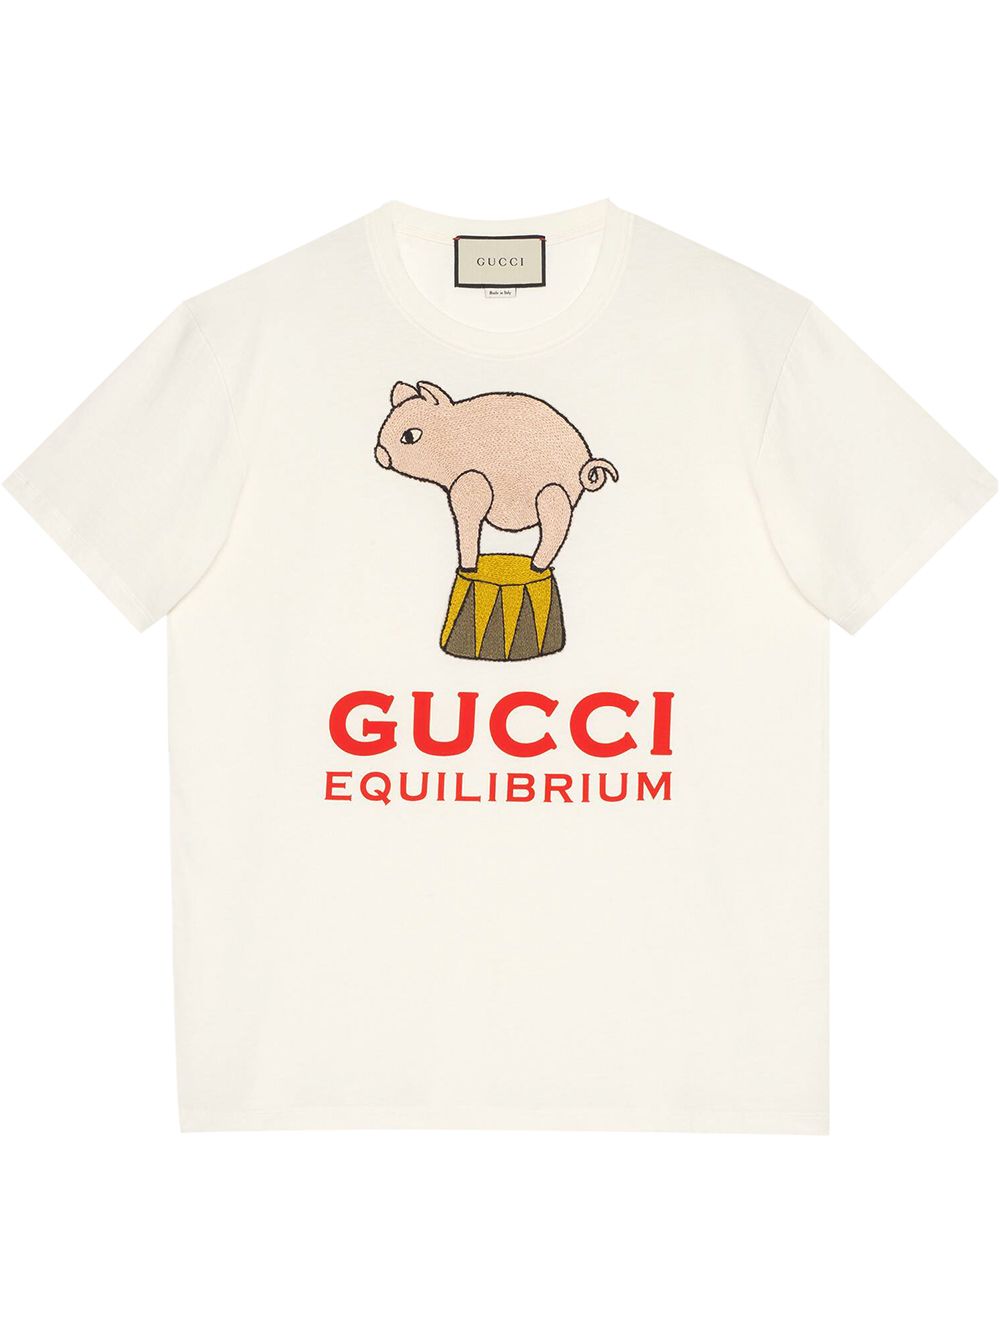 gucci circus shirt